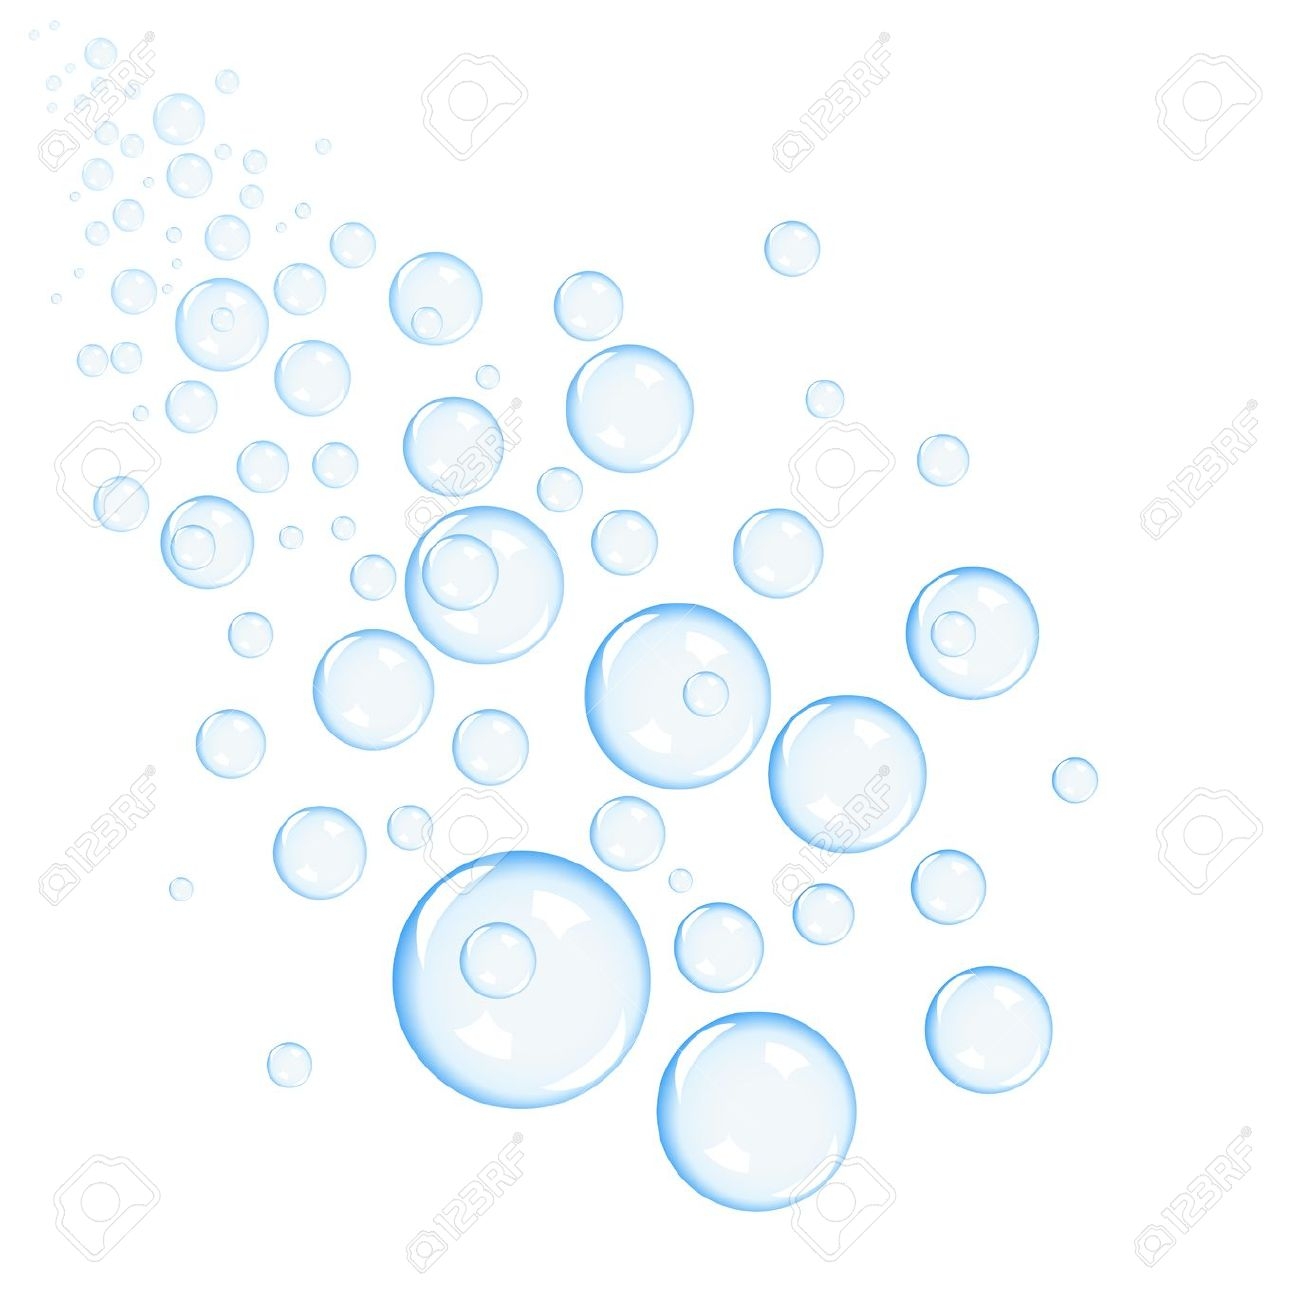 Bubble clipart transparent background. New bubbles design digital